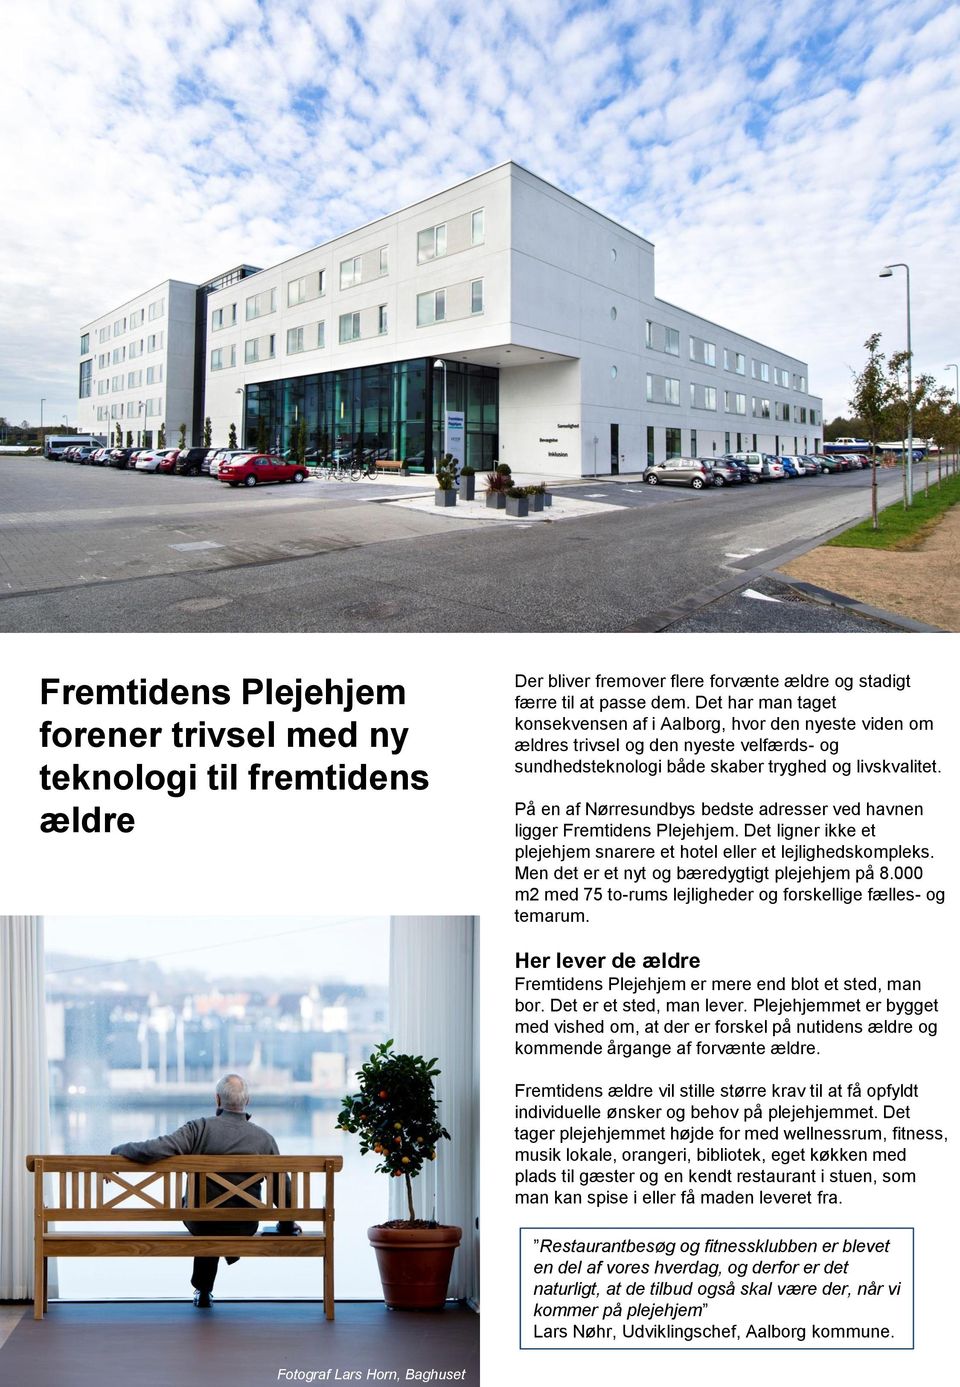 På en af Nørresundbys bedste adresser ved havnen ligger Fremtidens Plejehjem. Det ligner ikke et plejehjem snarere et hotel eller et lejlighedskompleks.